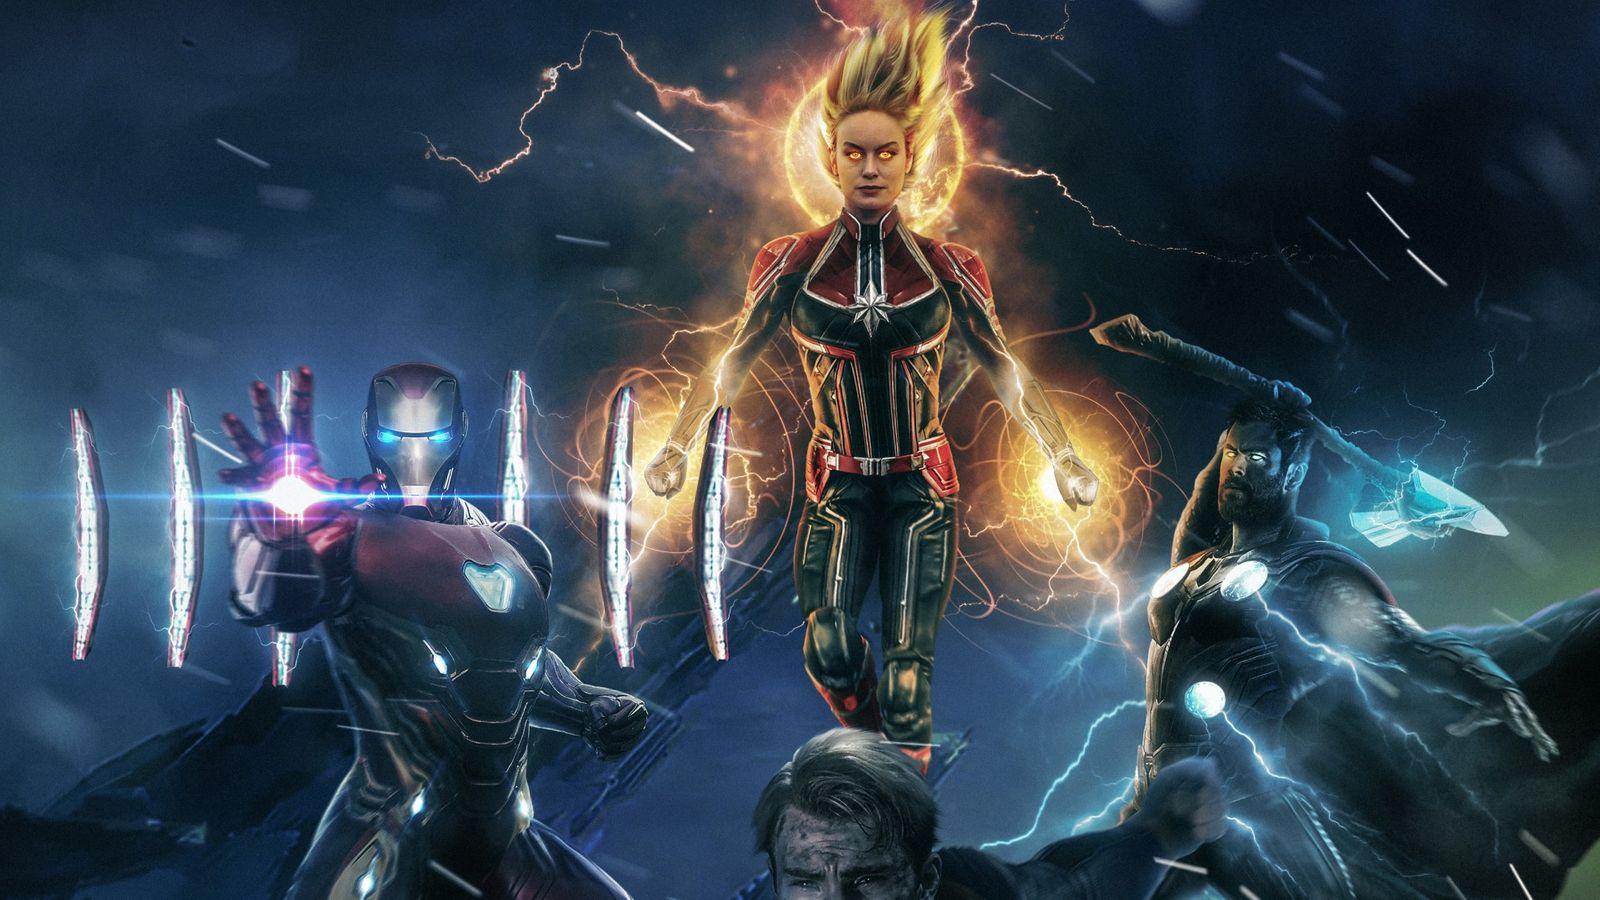 Marvel Superheroes Avengers 4 Endgame Wallpaper